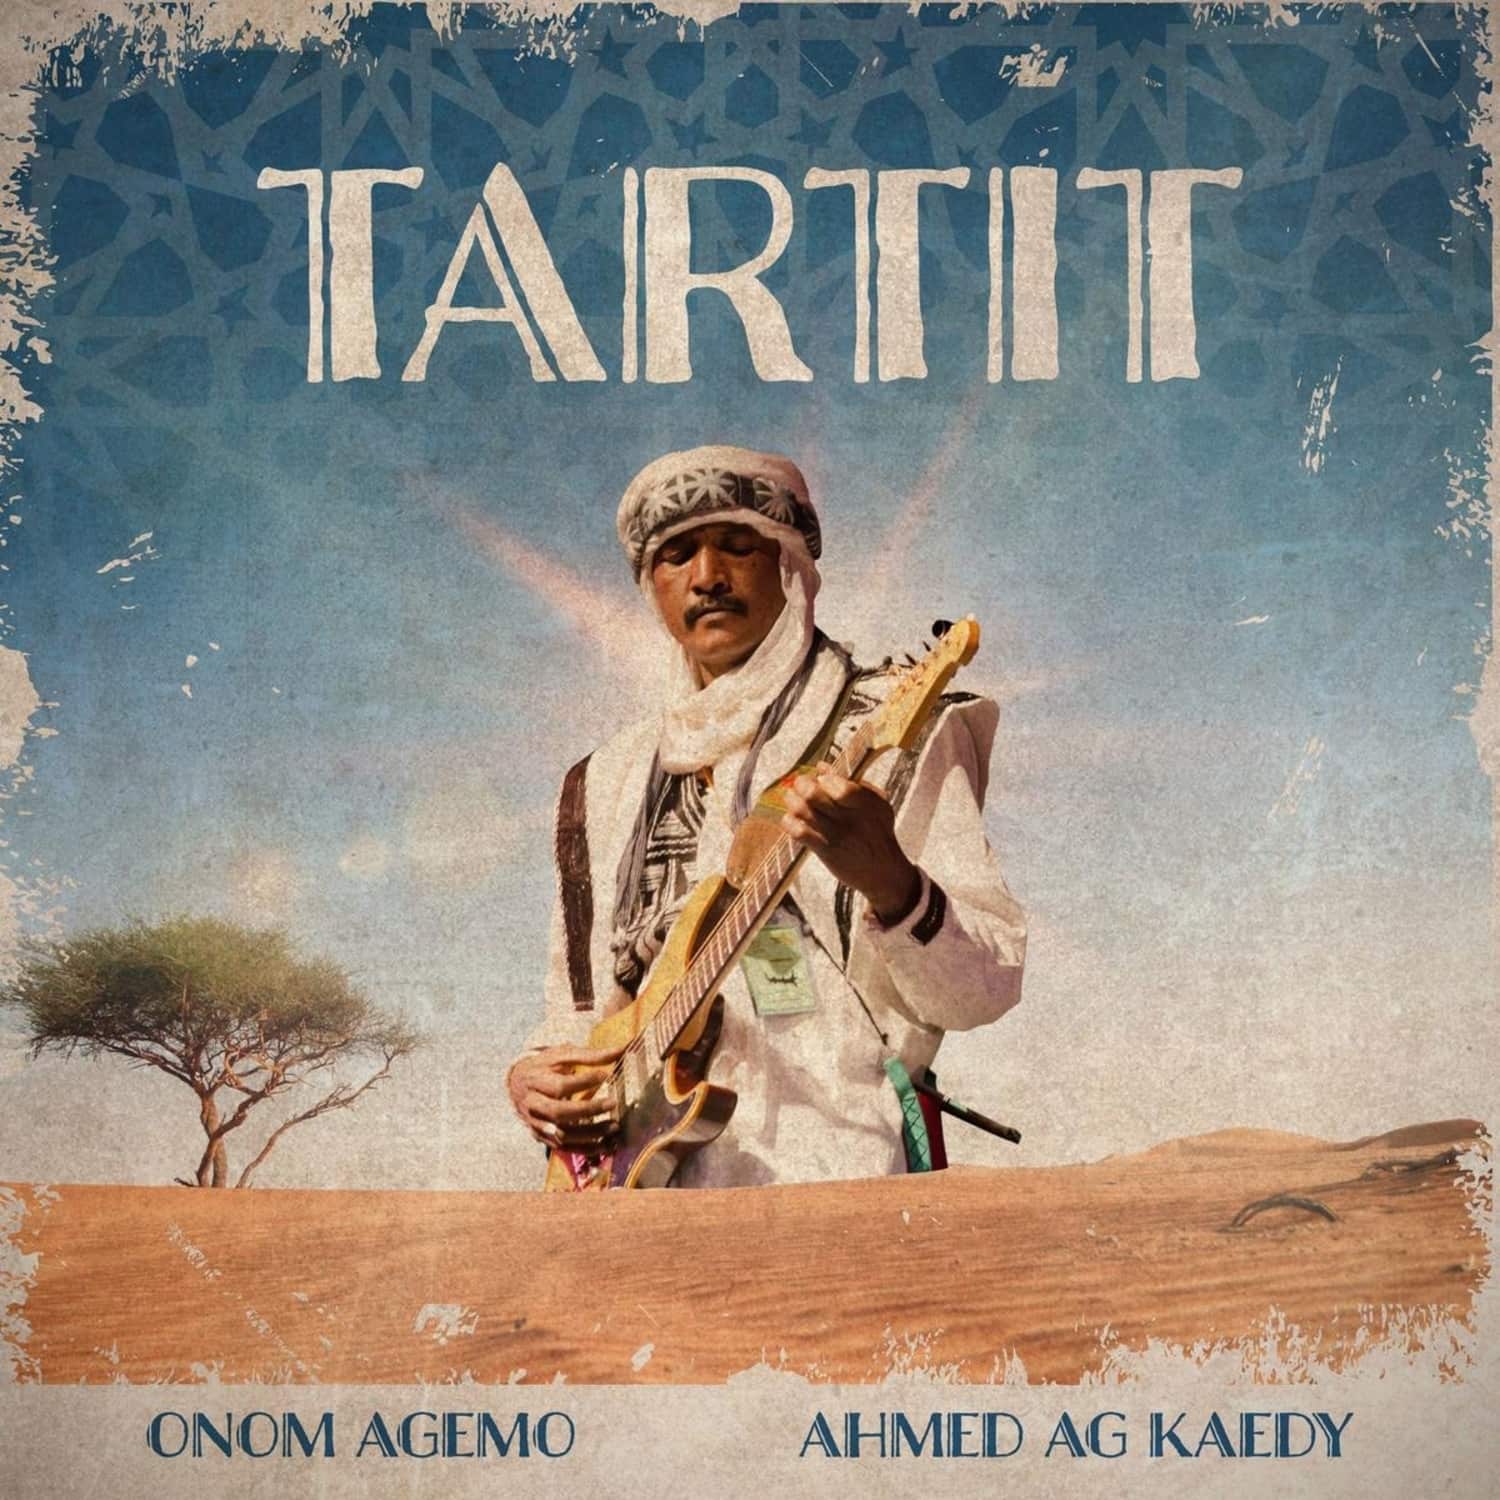 Onom Agemo & Ahmed Ag Kaedy - TARTIT 